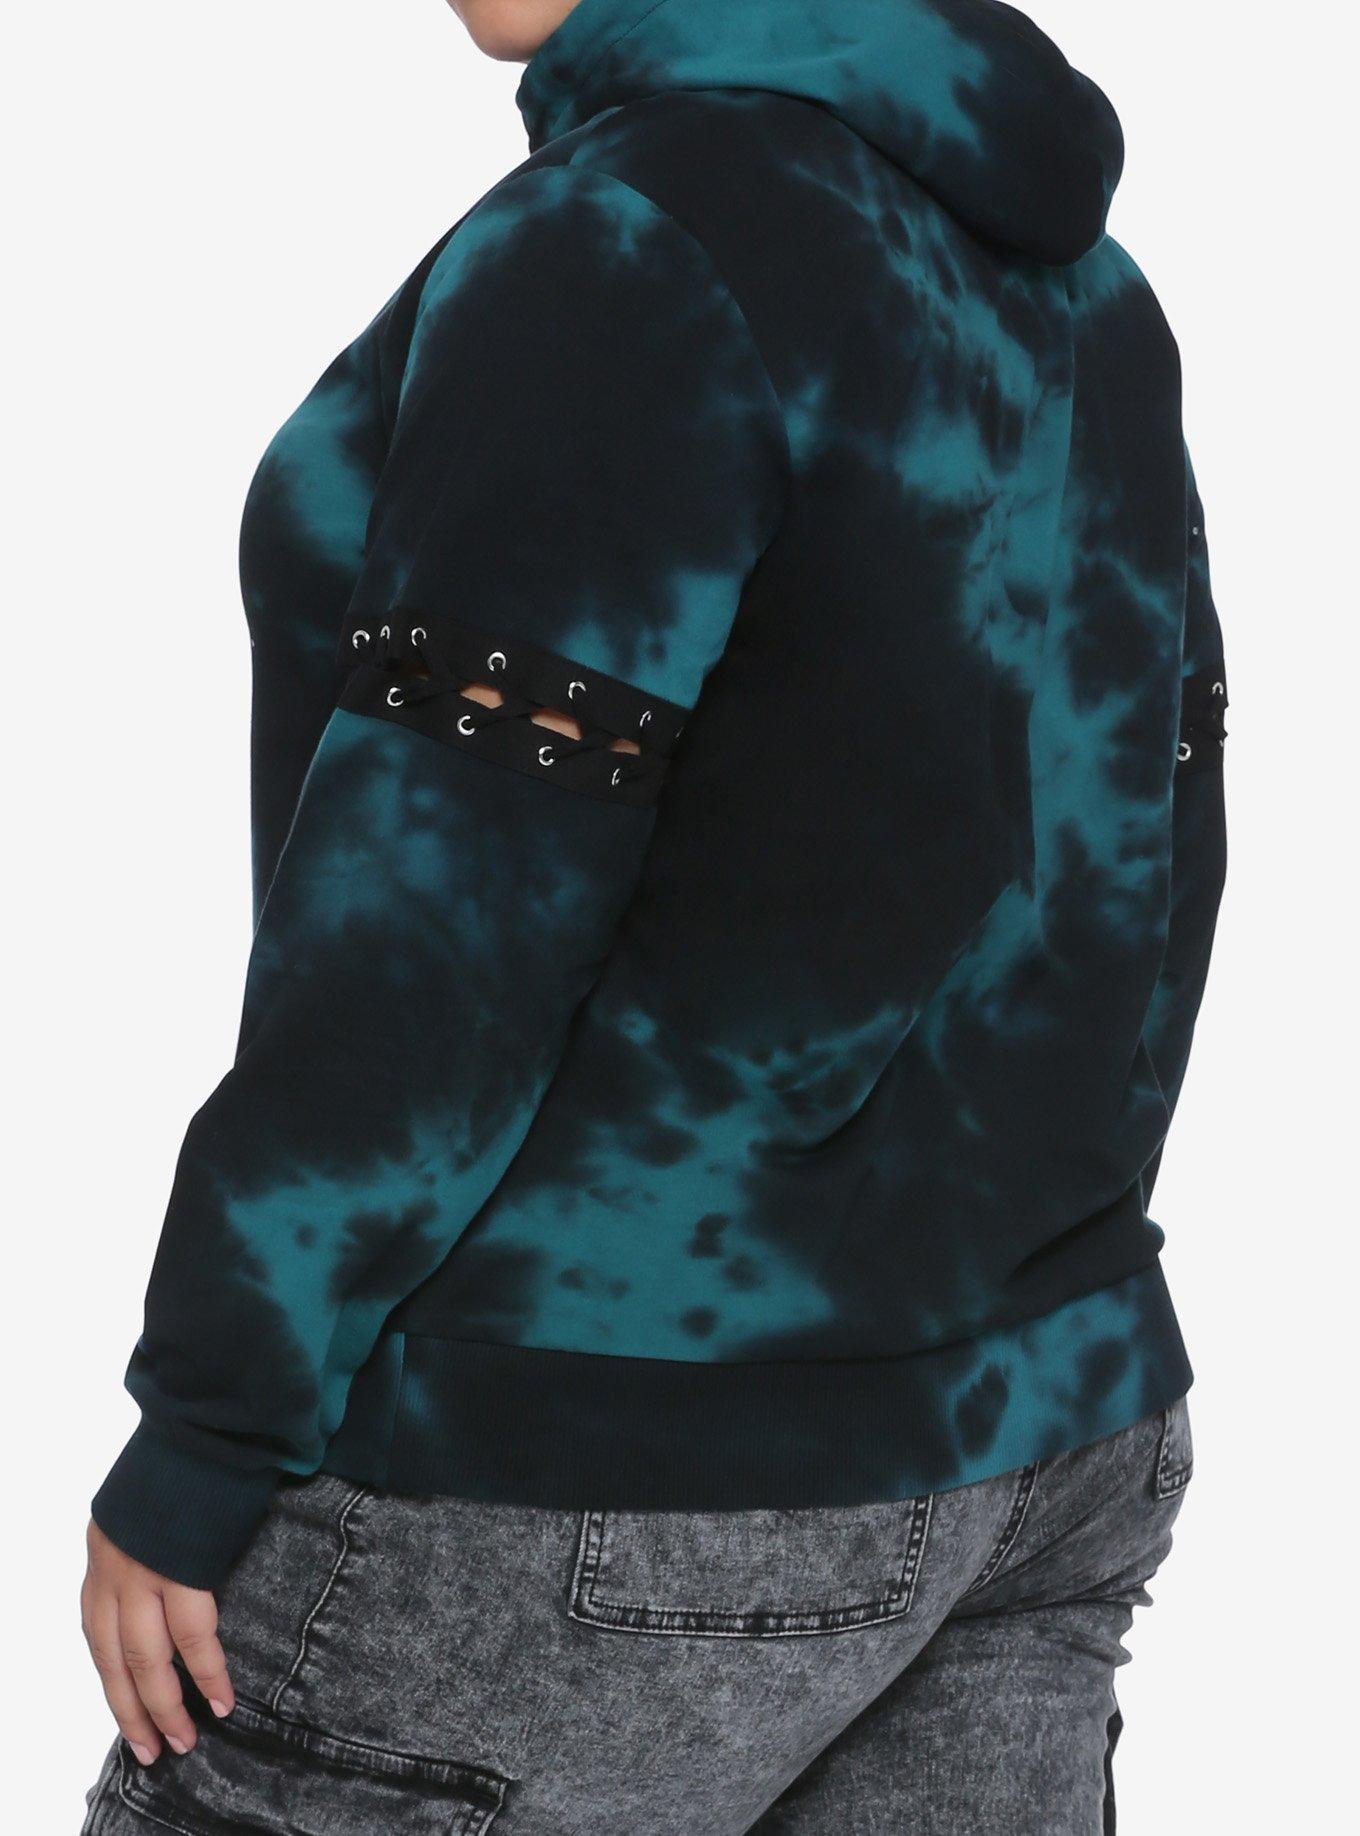 Teal & Black Lace-Up Sleeves Tie-Dye Girls Hoodie Plus Size, MULTI, alternate